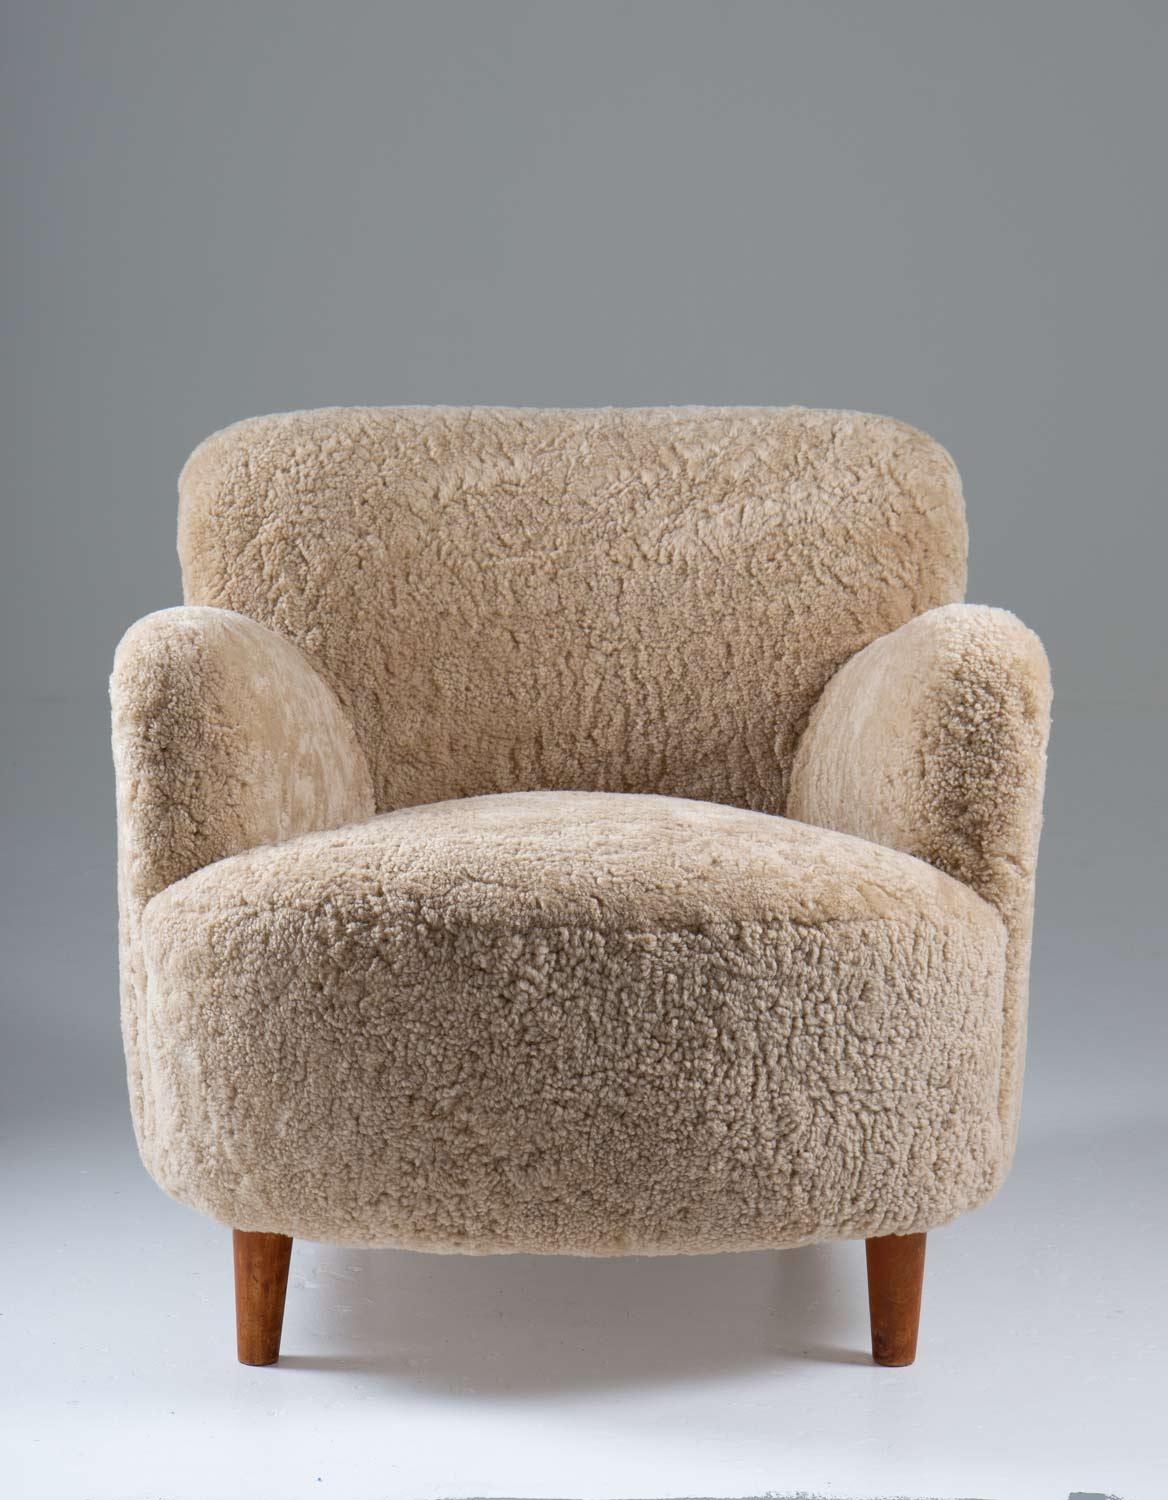 Chaises longues à dossier bas fabriquées en Suède vers 1940. 
Chaises longues douillettes aux proportions et au design exceptionnels. 
Ils ont été retapissés en peau de mouton ivoire.

Condit : Excellent, entièrement restauré et retapissé,